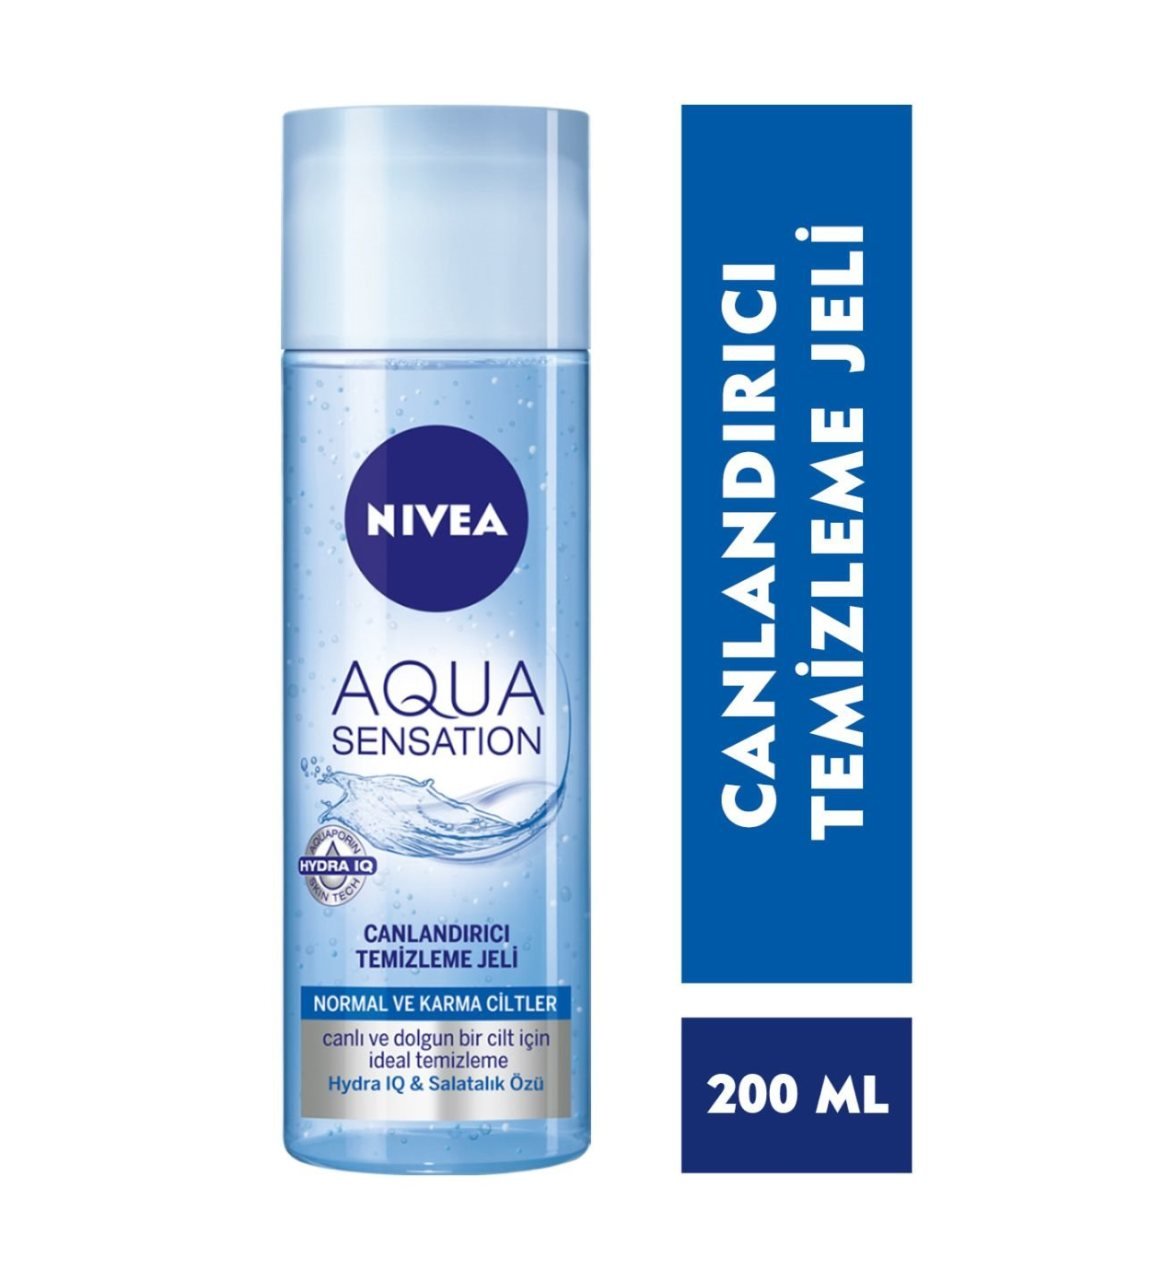 Nivea Aqua Sensation Yüz Temizleme Jeli 200ml